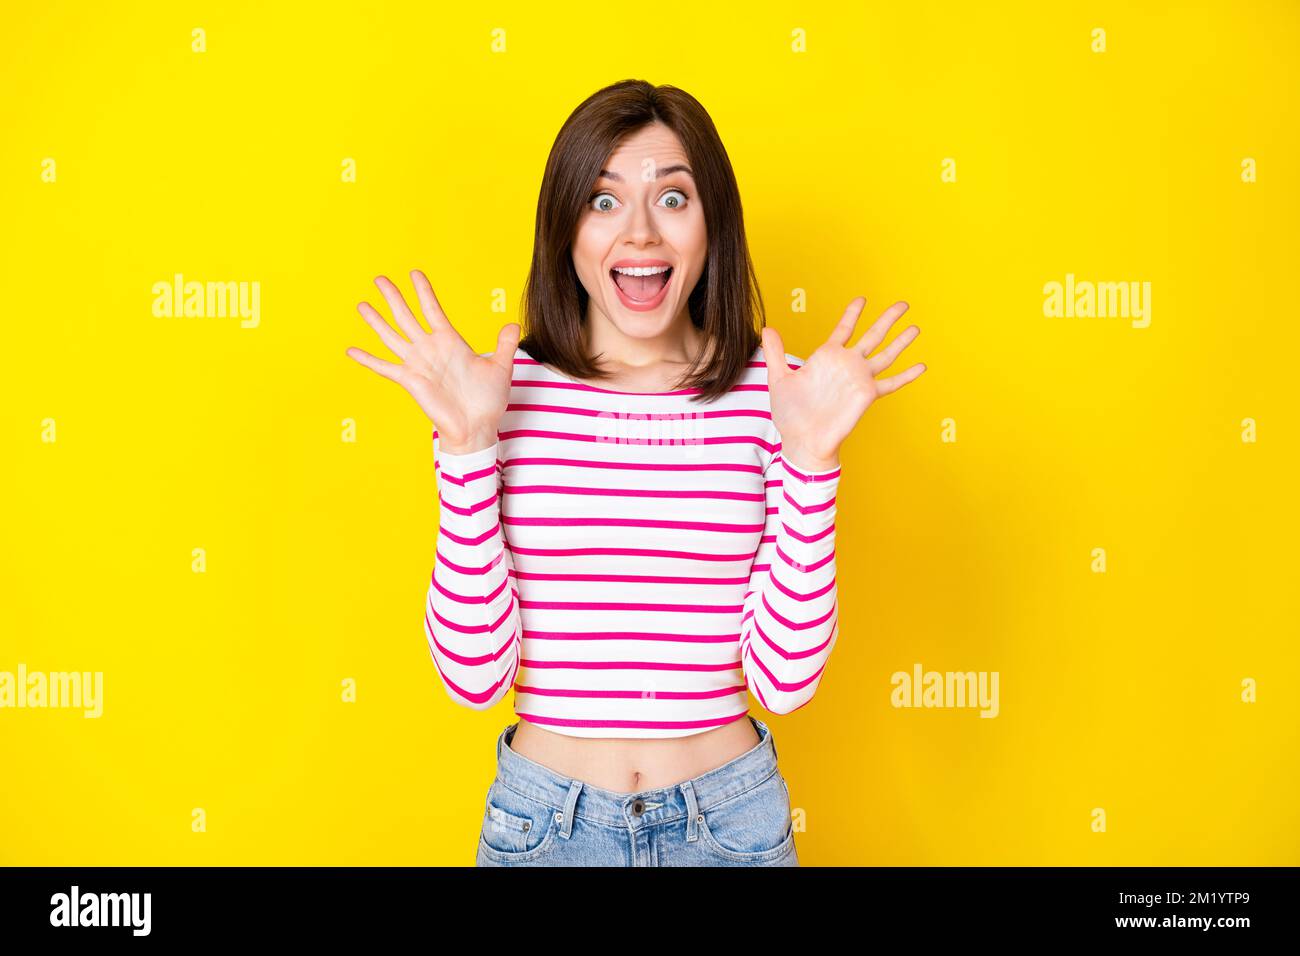 Porträtfoto einer jungen, verrückten, attraktiven Frau, die den Mund aufmacht und in die Kamera schaut, was passiert ist, isoliert auf gelbem Hintergrund Stockfoto